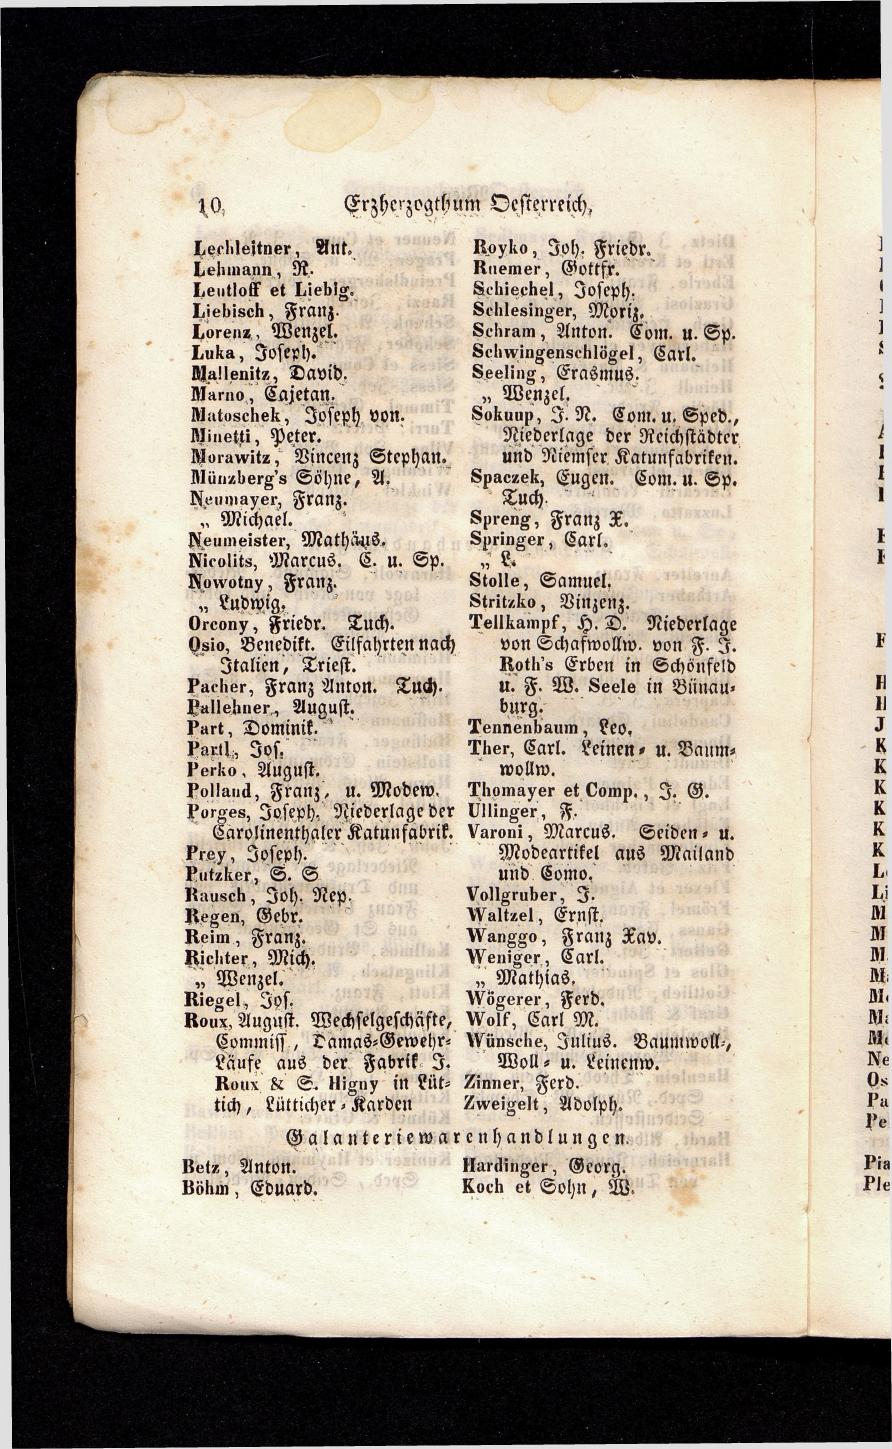 Grosses Adressbuch der Kaufleute. No. 13. Oesterreich ober u. unter der Enns 1844 - Seite 14